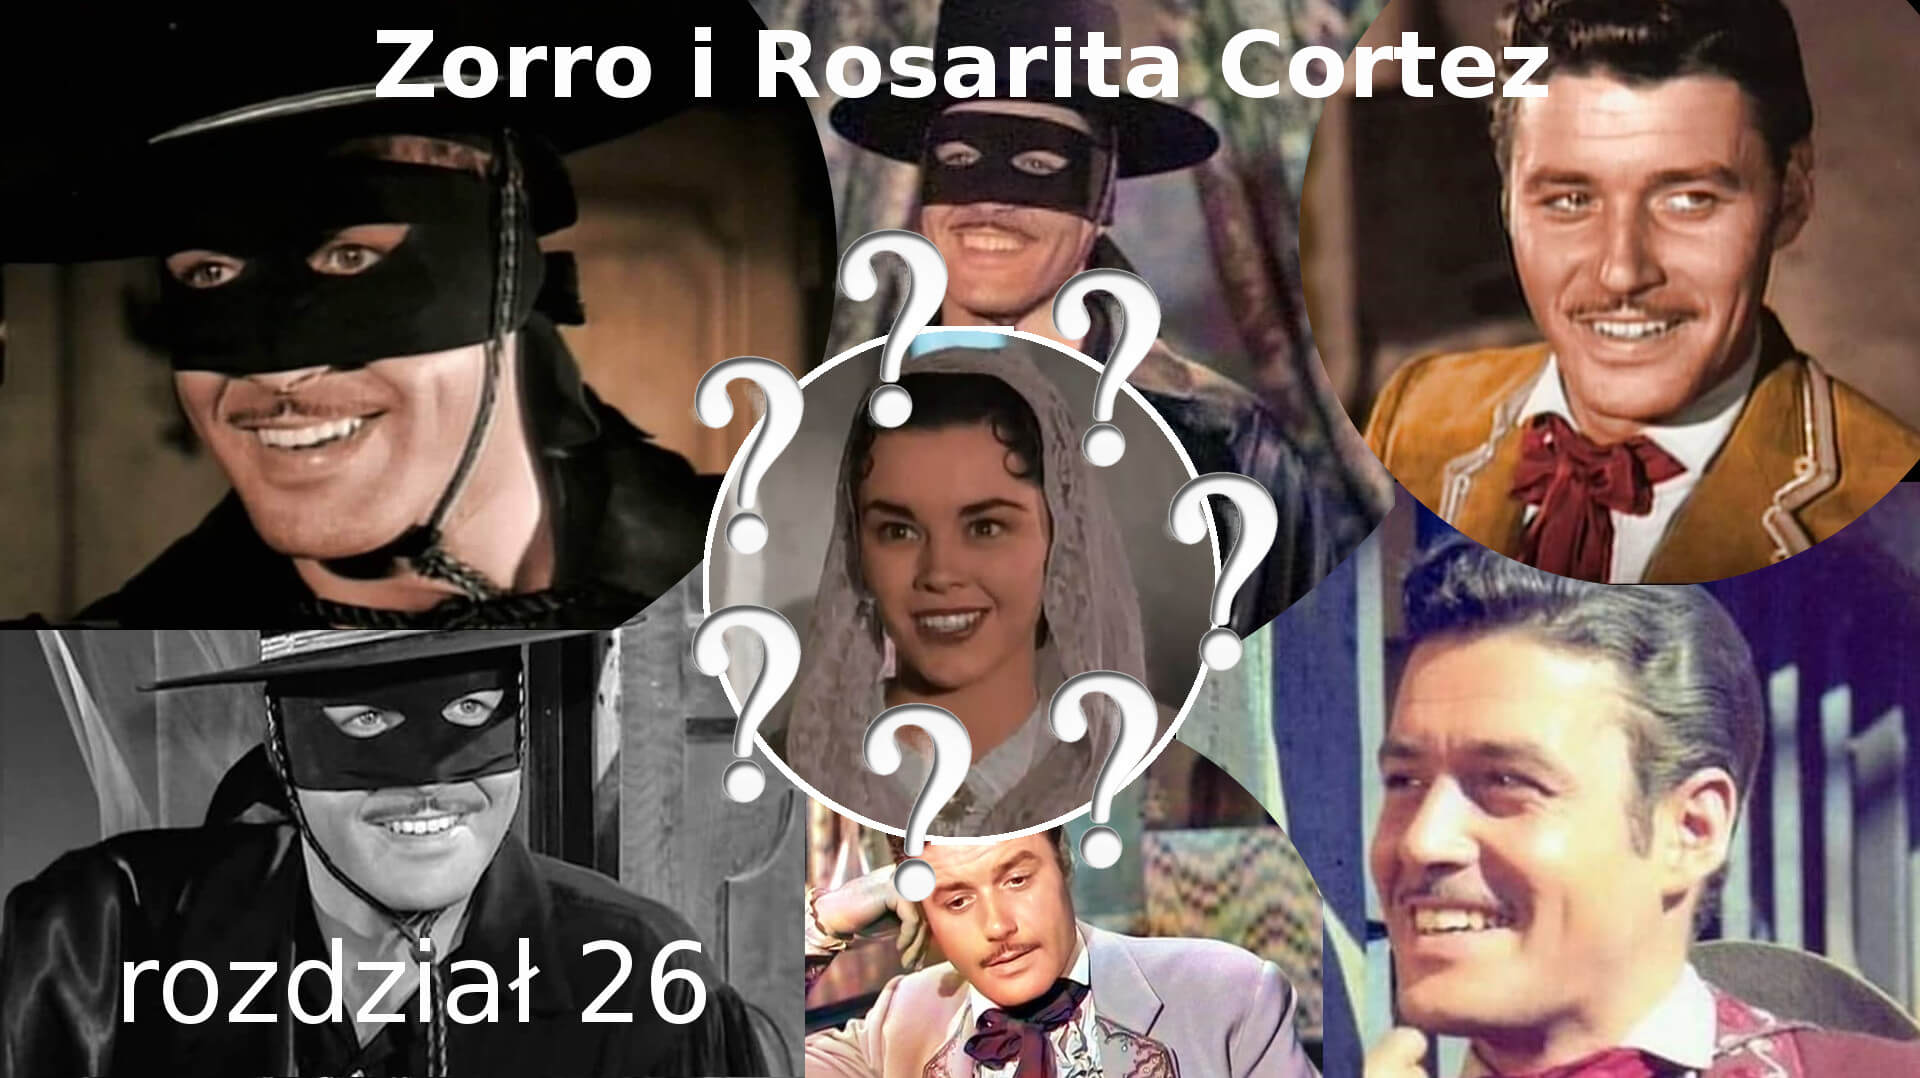 Zorro i Rosarita Cortez rozdział 26 zorro fanfiction